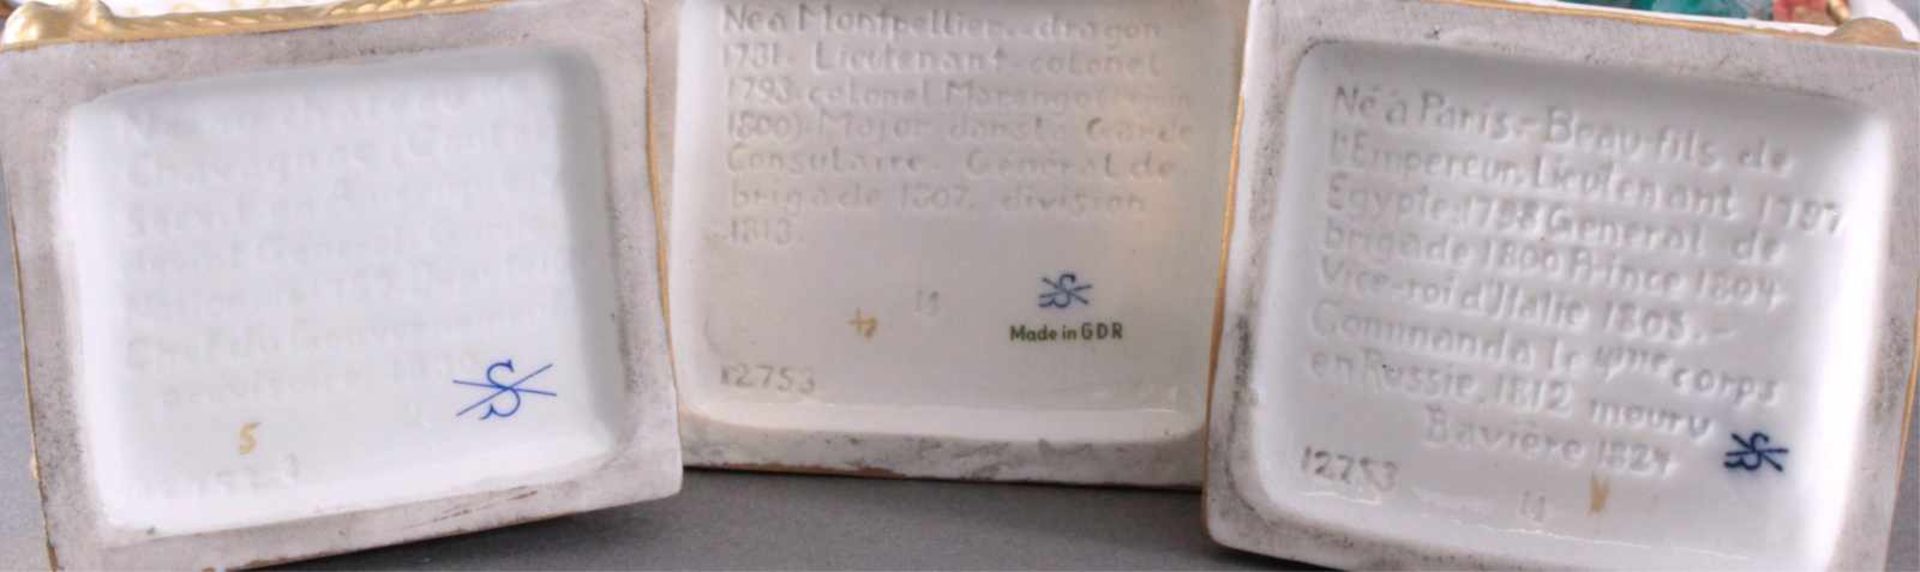 5 Porzellanfiguren, Die Generäle NapoleonsManufaktur Scheibe-Alsbach. Alle farbig bemalt und - Bild 8 aus 9